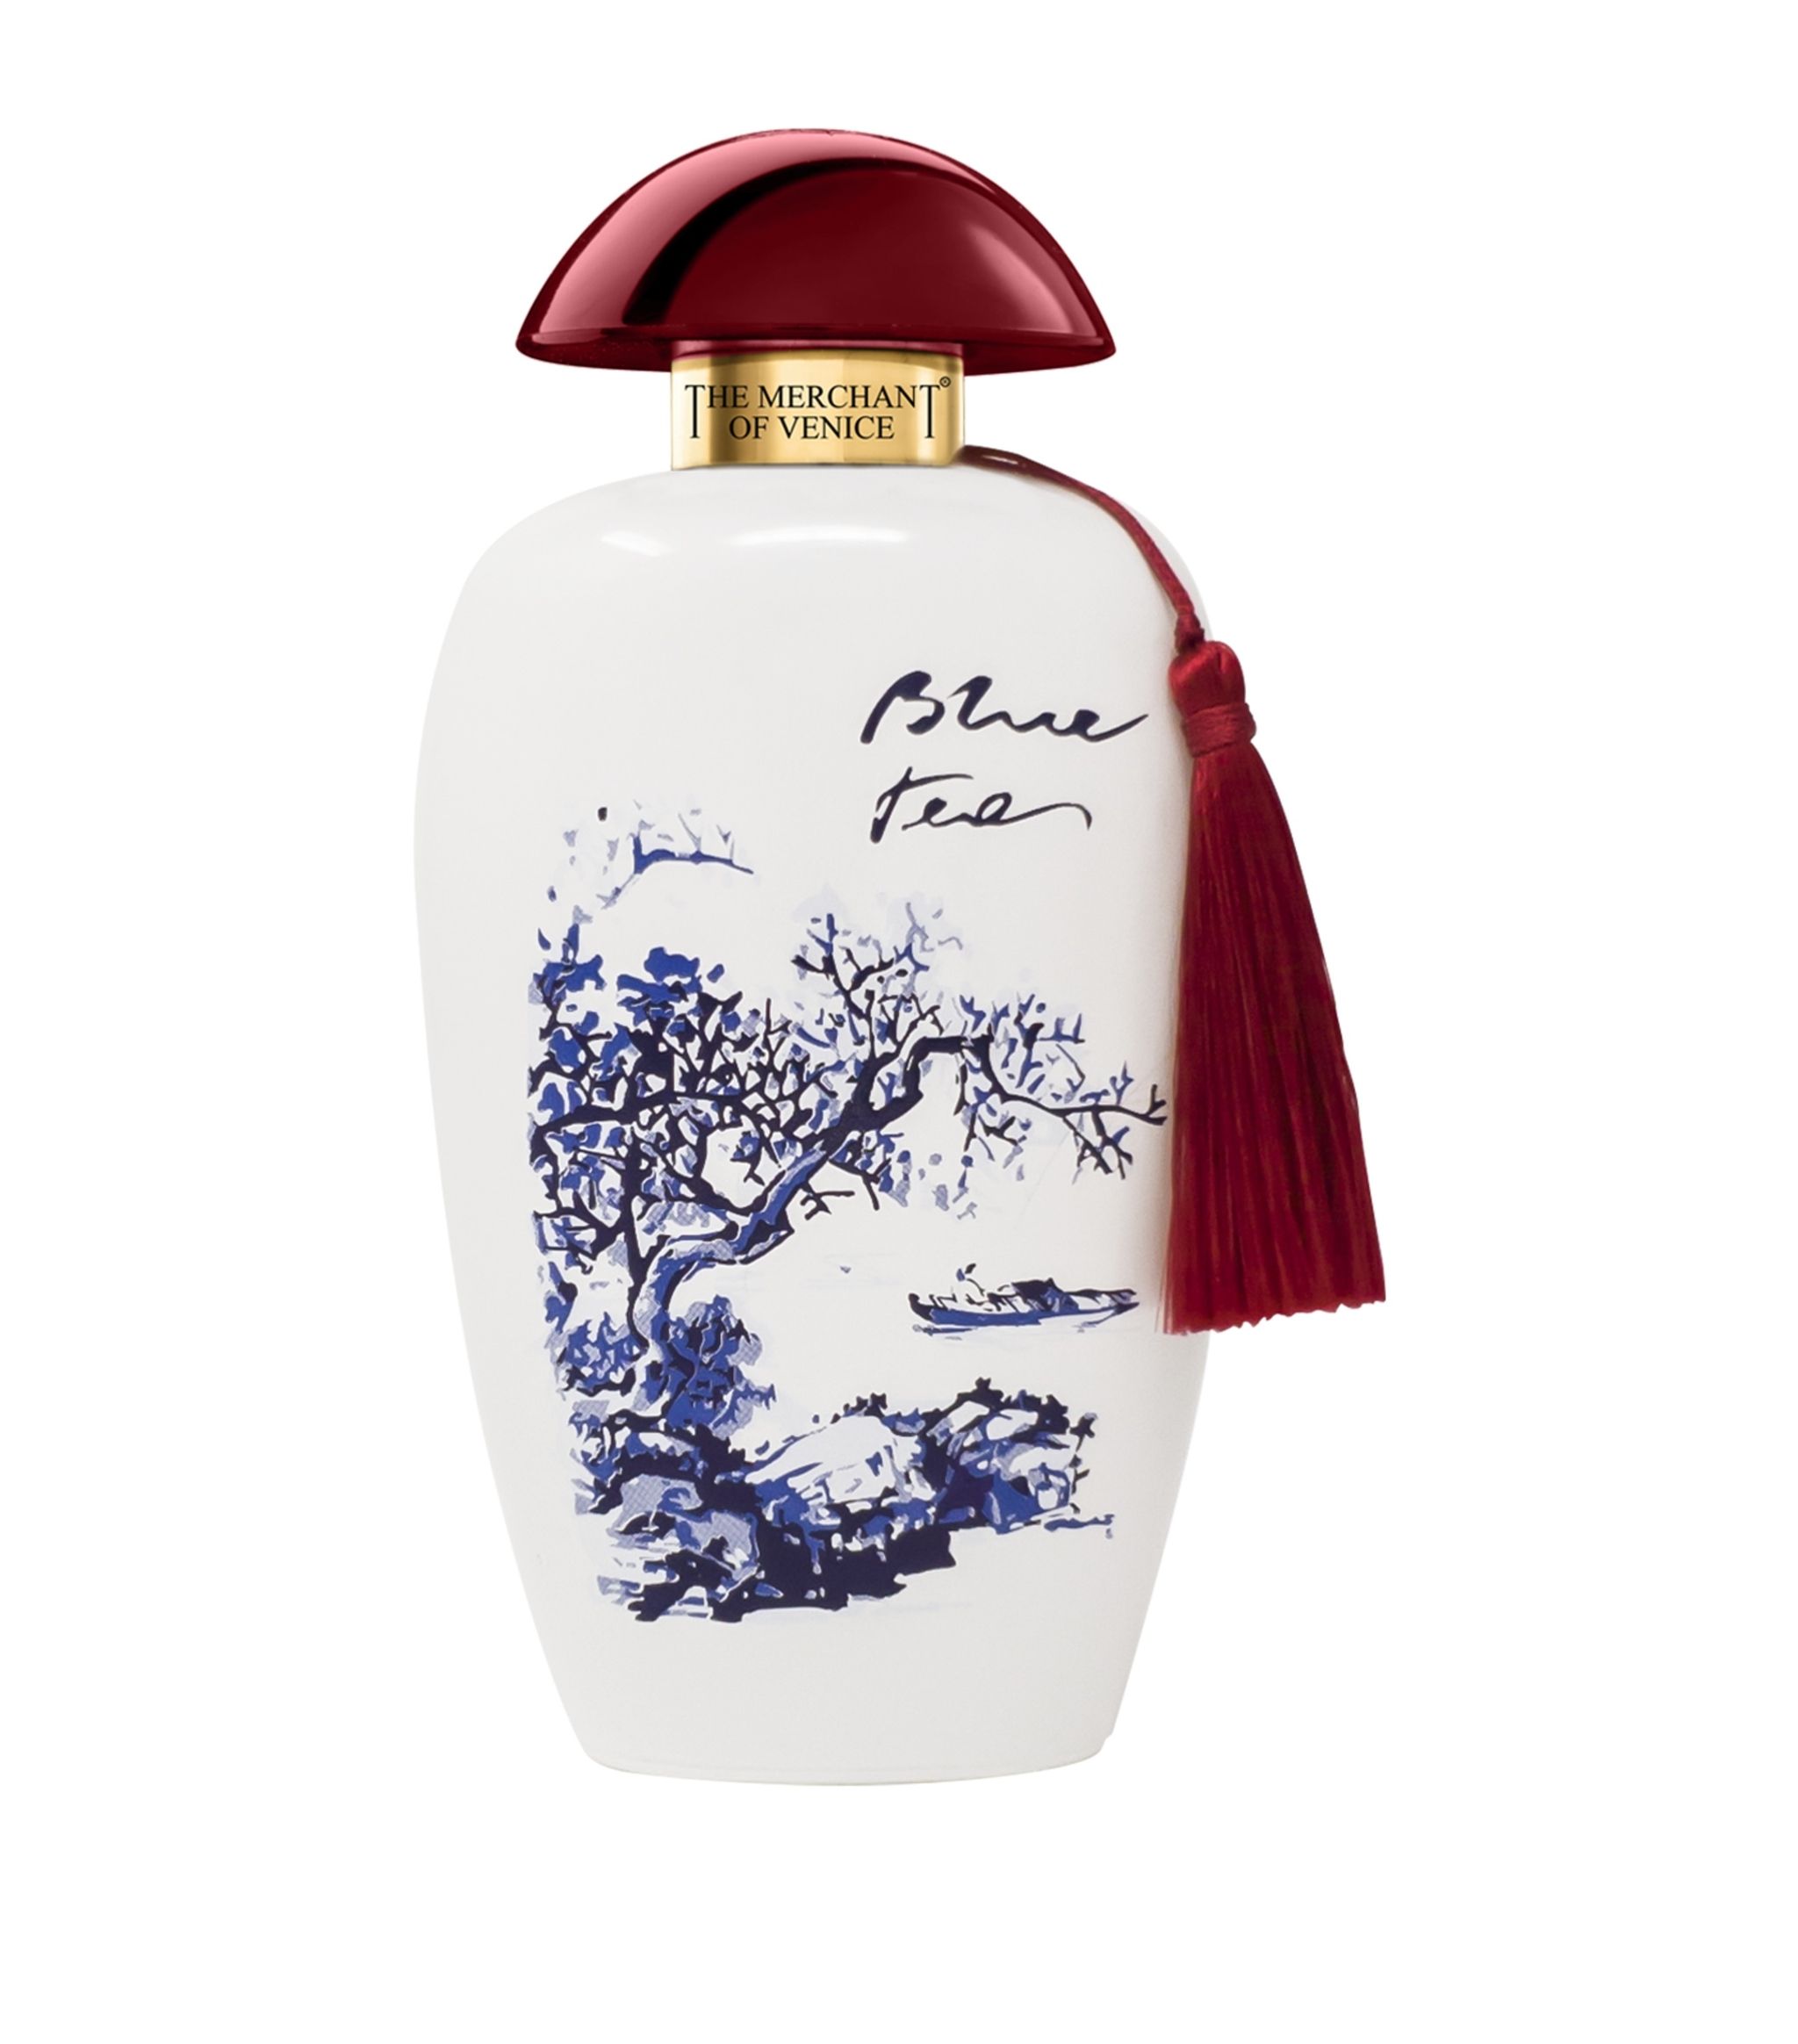 Photos - Women's Fragrance The Merchant of Venice Blue Tea Eau de Parfum 100ml & 10ml Spray - Peacock 